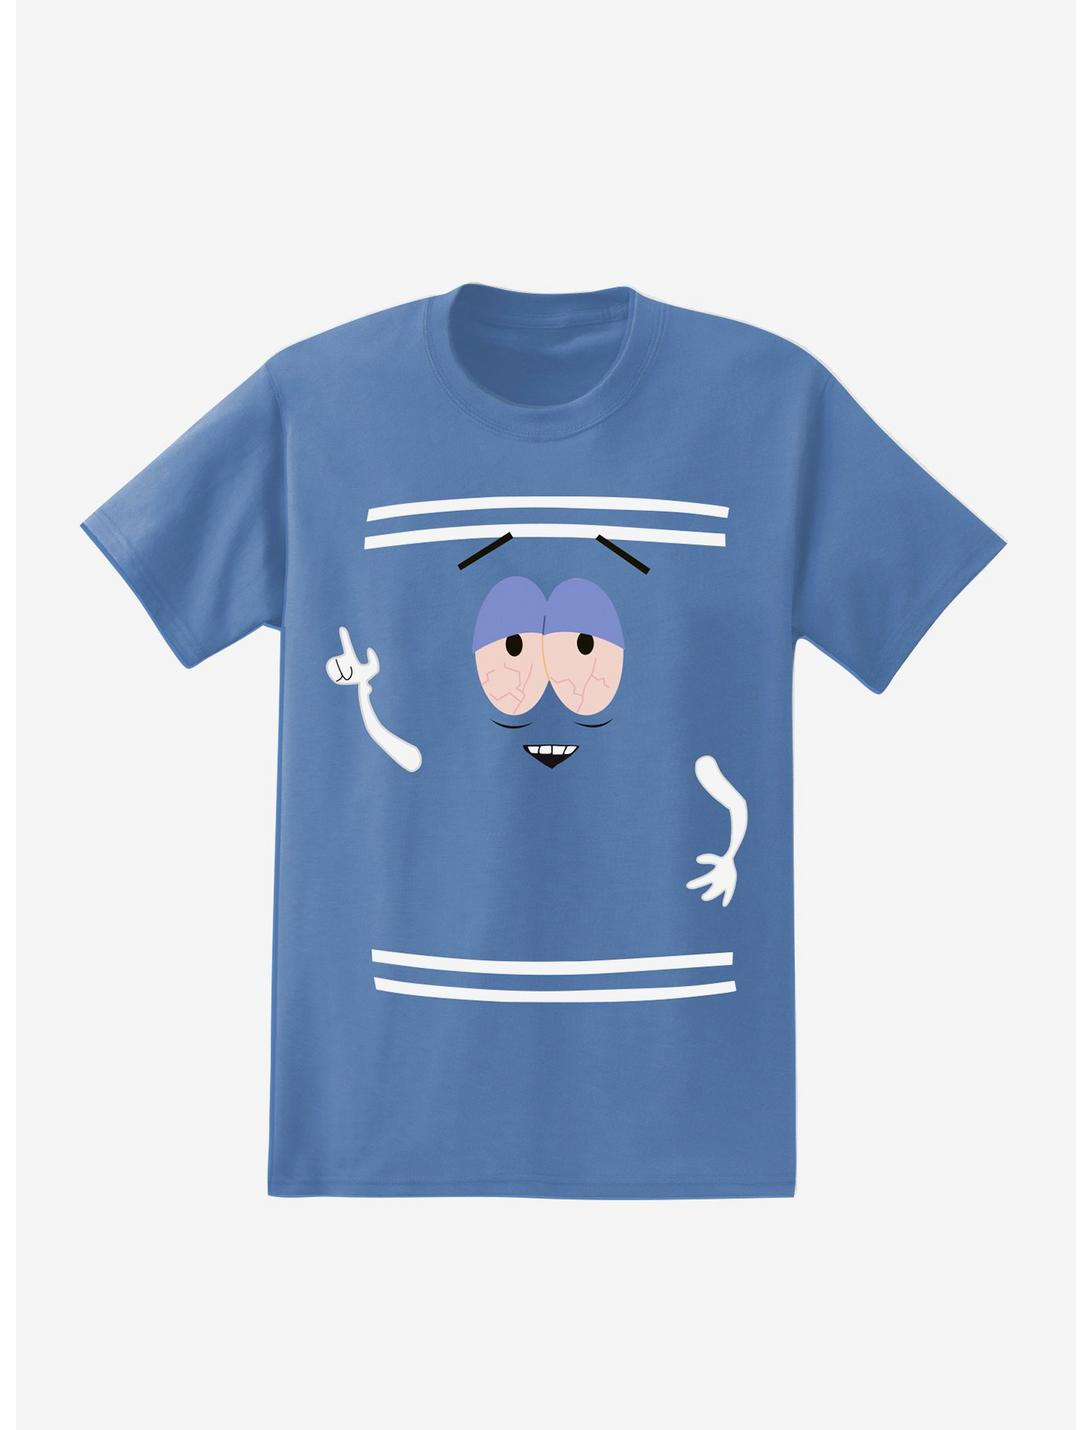 South Park Towelie T-Shirt, LT BLUE, hi-res